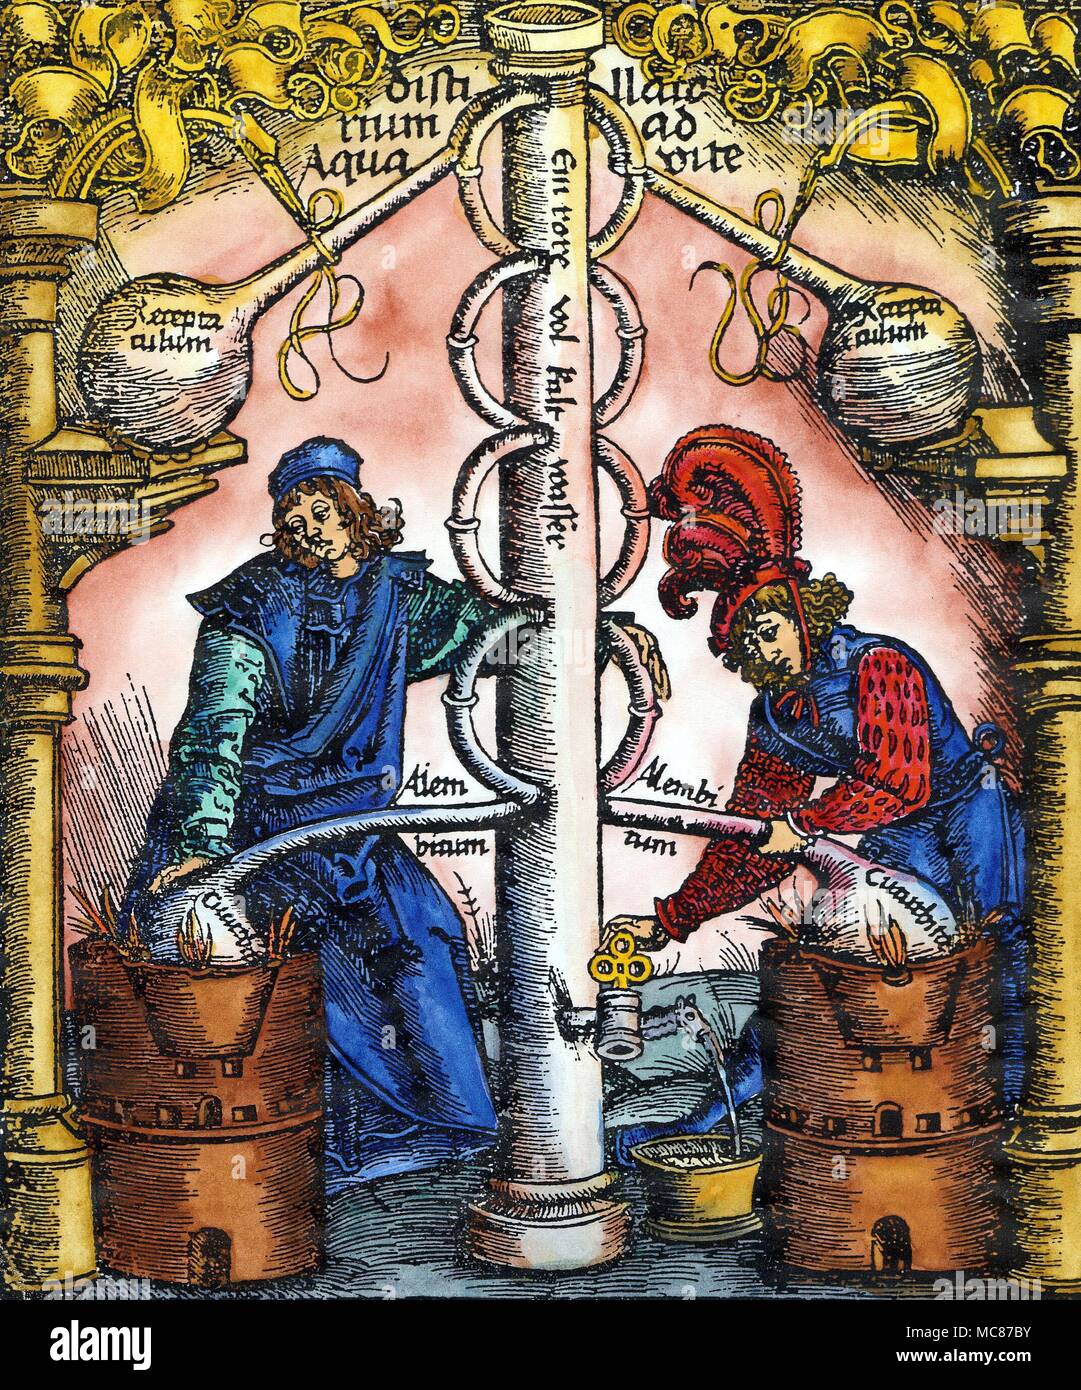 Symbole - Schlüssel - drei Titel - Seite Holzschnitt zu Brunschwig, das Buch zu Distilieren, 1532. Die beiden Chemiker oder Alchemisten erscheinen zu destillieren, Aqua Vita, aber die wichtigsten Symbole in dieser faszinierenden Abbildung ist der Schlüssel zu den Ausgießer, betrieben von der Alchemist im unteren Bereich des Bildes, um einige der destillierte Flüssigkeit ziehen. Der Schlüssel ist von drei Kreisen gebildet - ein deutlicher Hinweis auf die Dreifaltigkeit, und eine Erinnerung daran, dass die Alchemisten, die alle ihre Operationen als unter den legalen Kontrolle Gottes betrachtet. Diese Dreieinigkeit Symbol wurde Im alchemistischen Bild des Menschen, der w wider Stockfoto